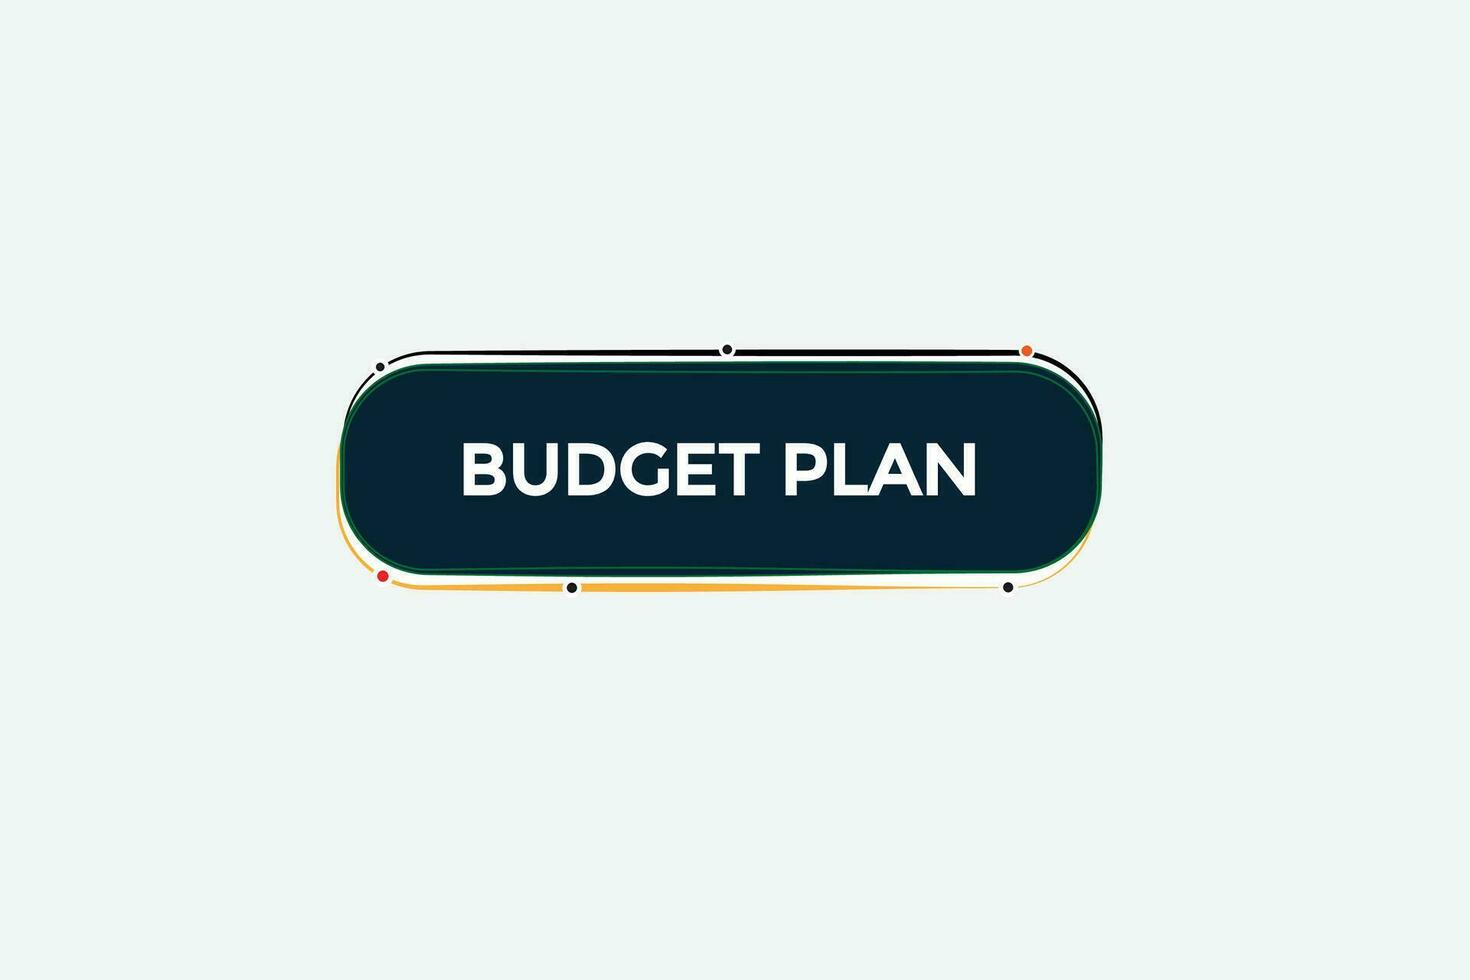 nuevo presupuesto plan moderno, sitio web, hacer clic botón, nivel, firmar, discurso, burbuja bandera, vector